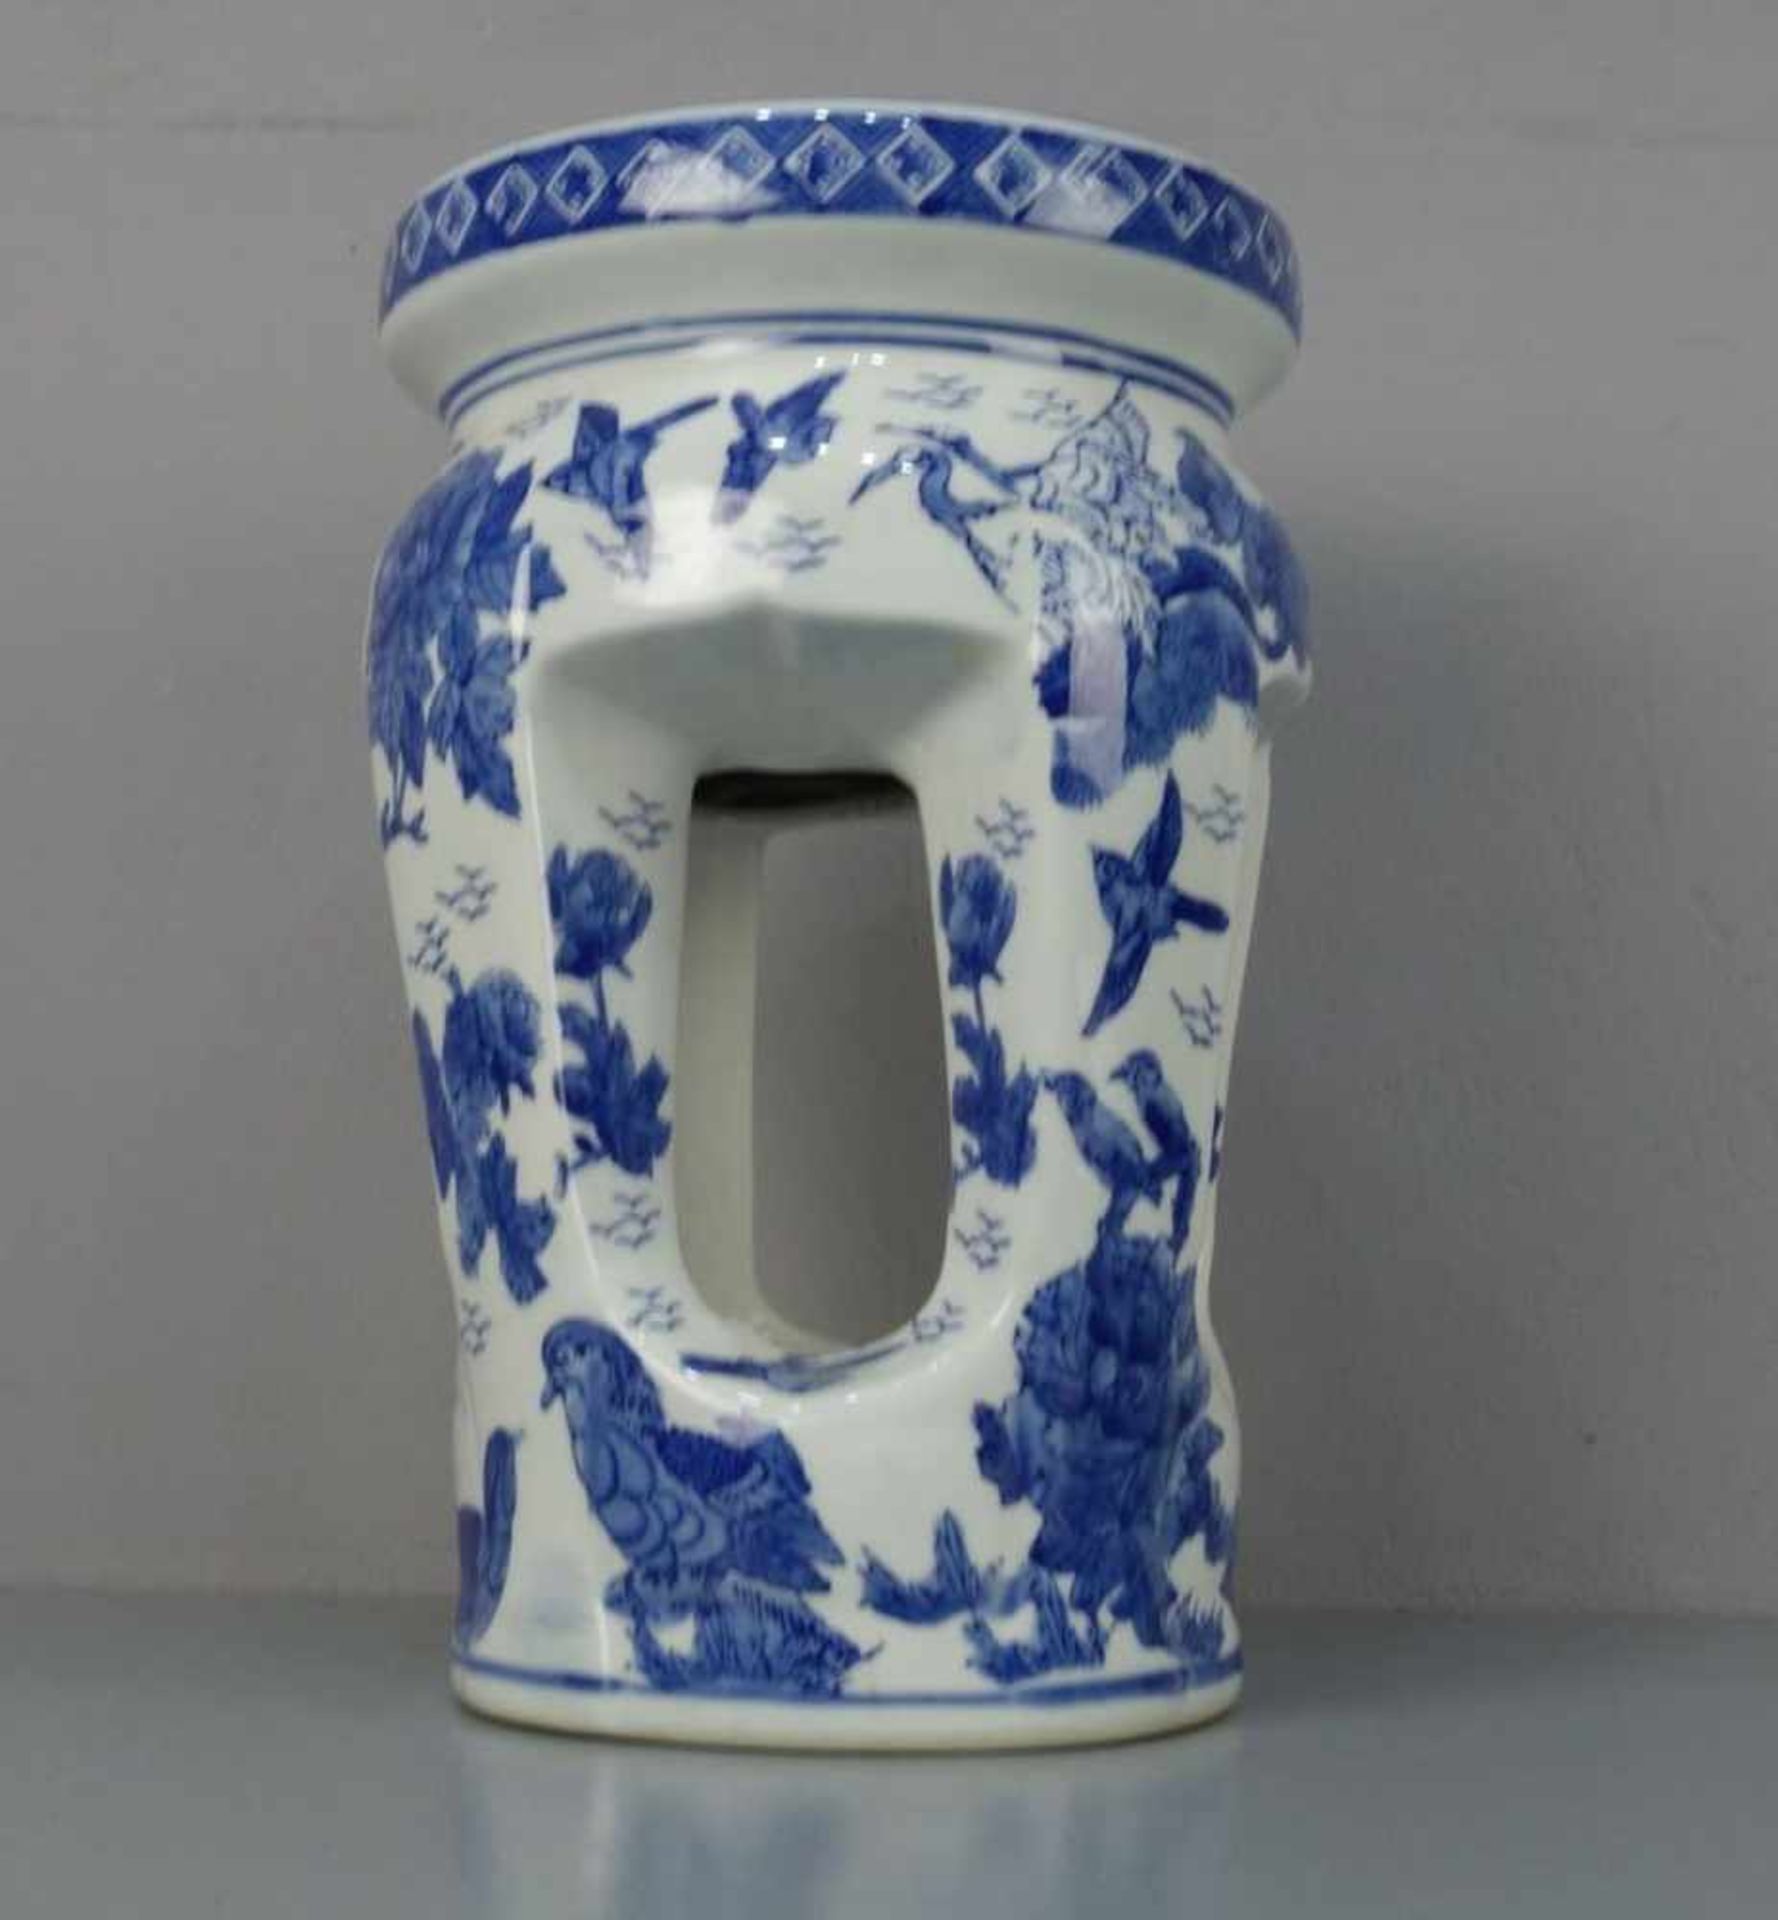 CHINESISCHER HOCKER / stool, Porzellan mit Blaumalerei (ungemarkt), 2. Hälfte 20. Jh.; Rundstand, - Image 4 of 5